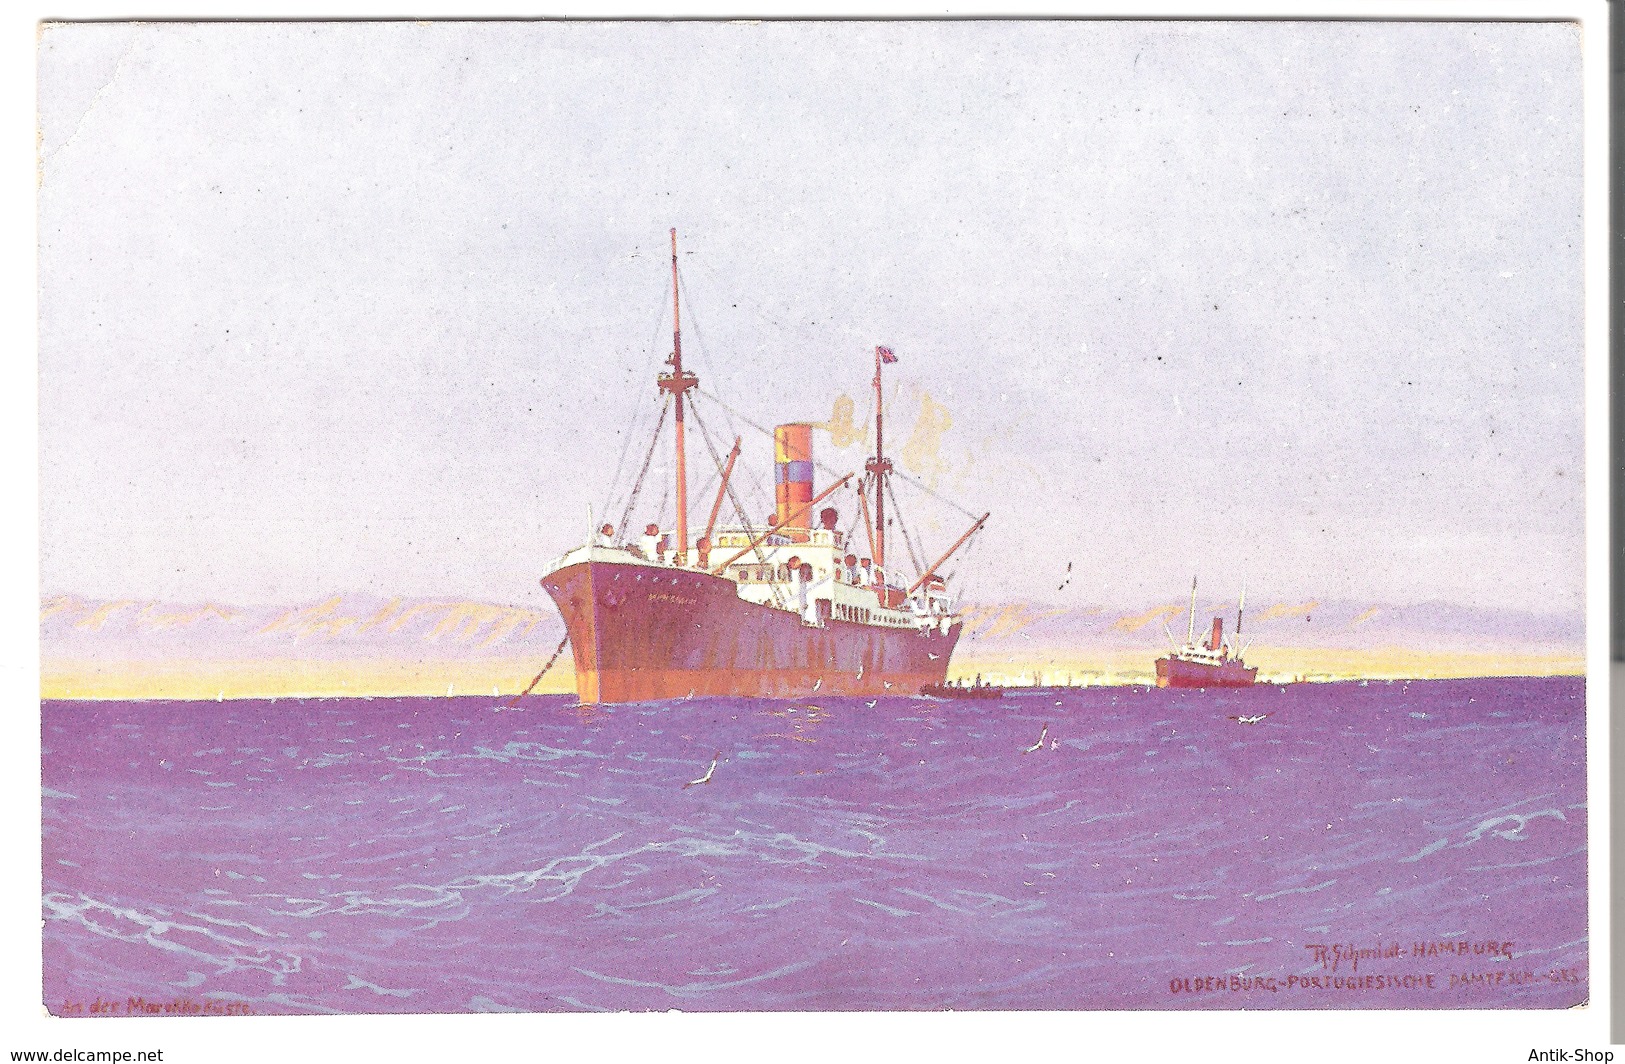 6 Postkarten mit Ozeanriesen/Schiffen Gerahmt von ca. 1920 (785)  Preis reduziert